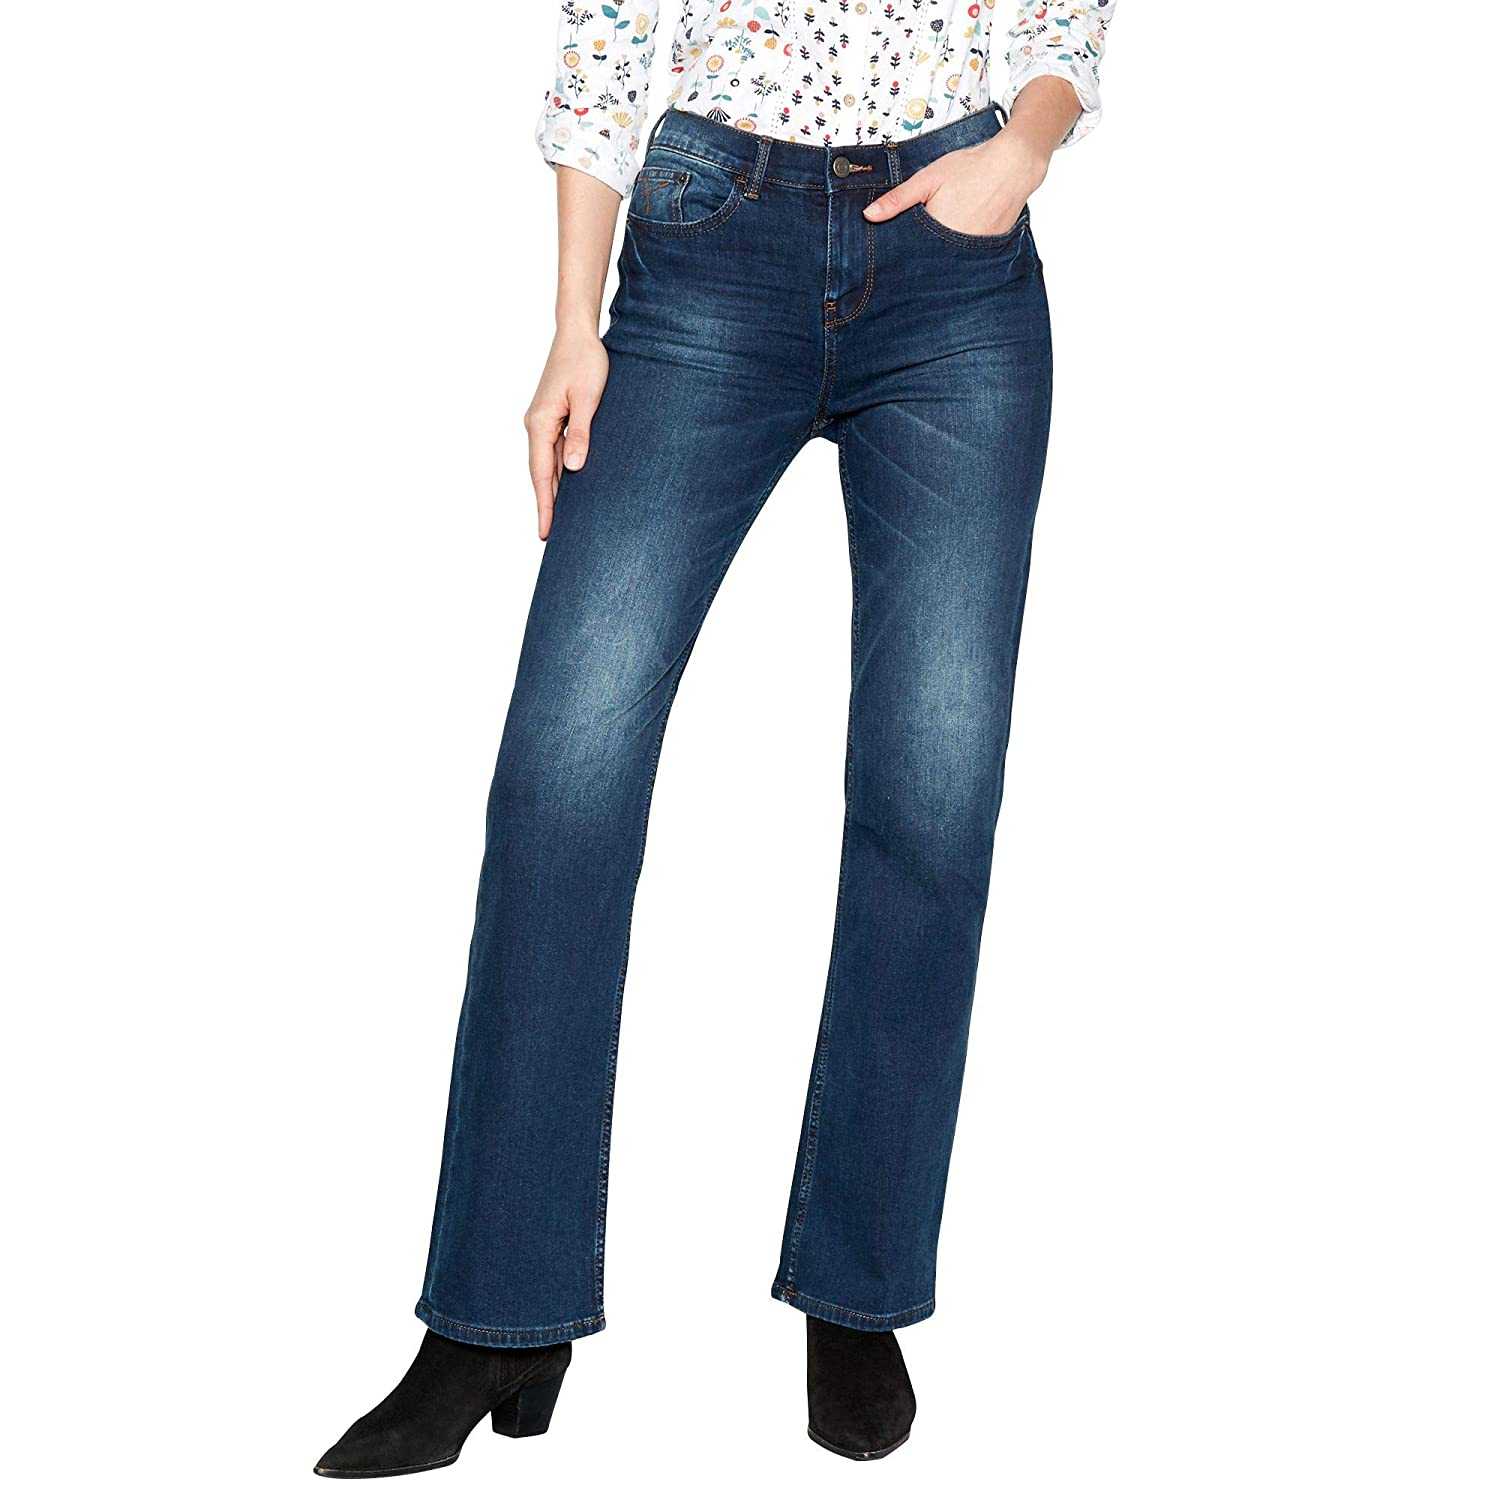 Что за модель джинсов буткат и с чем её носить